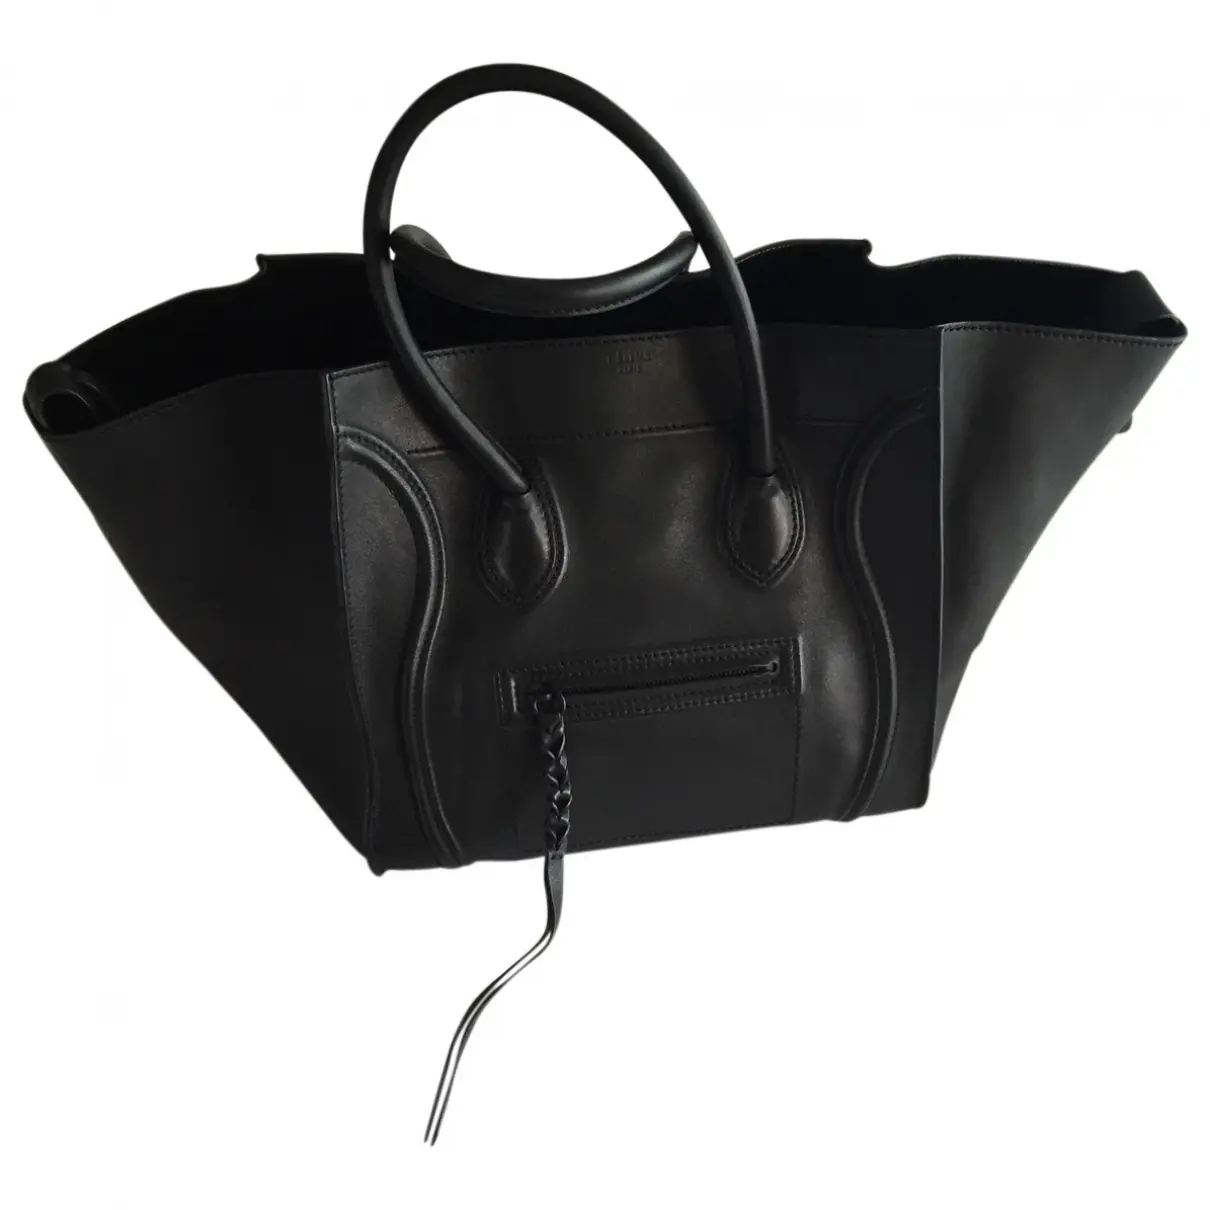 Black Leather Handbag Luggage Phantom Celine